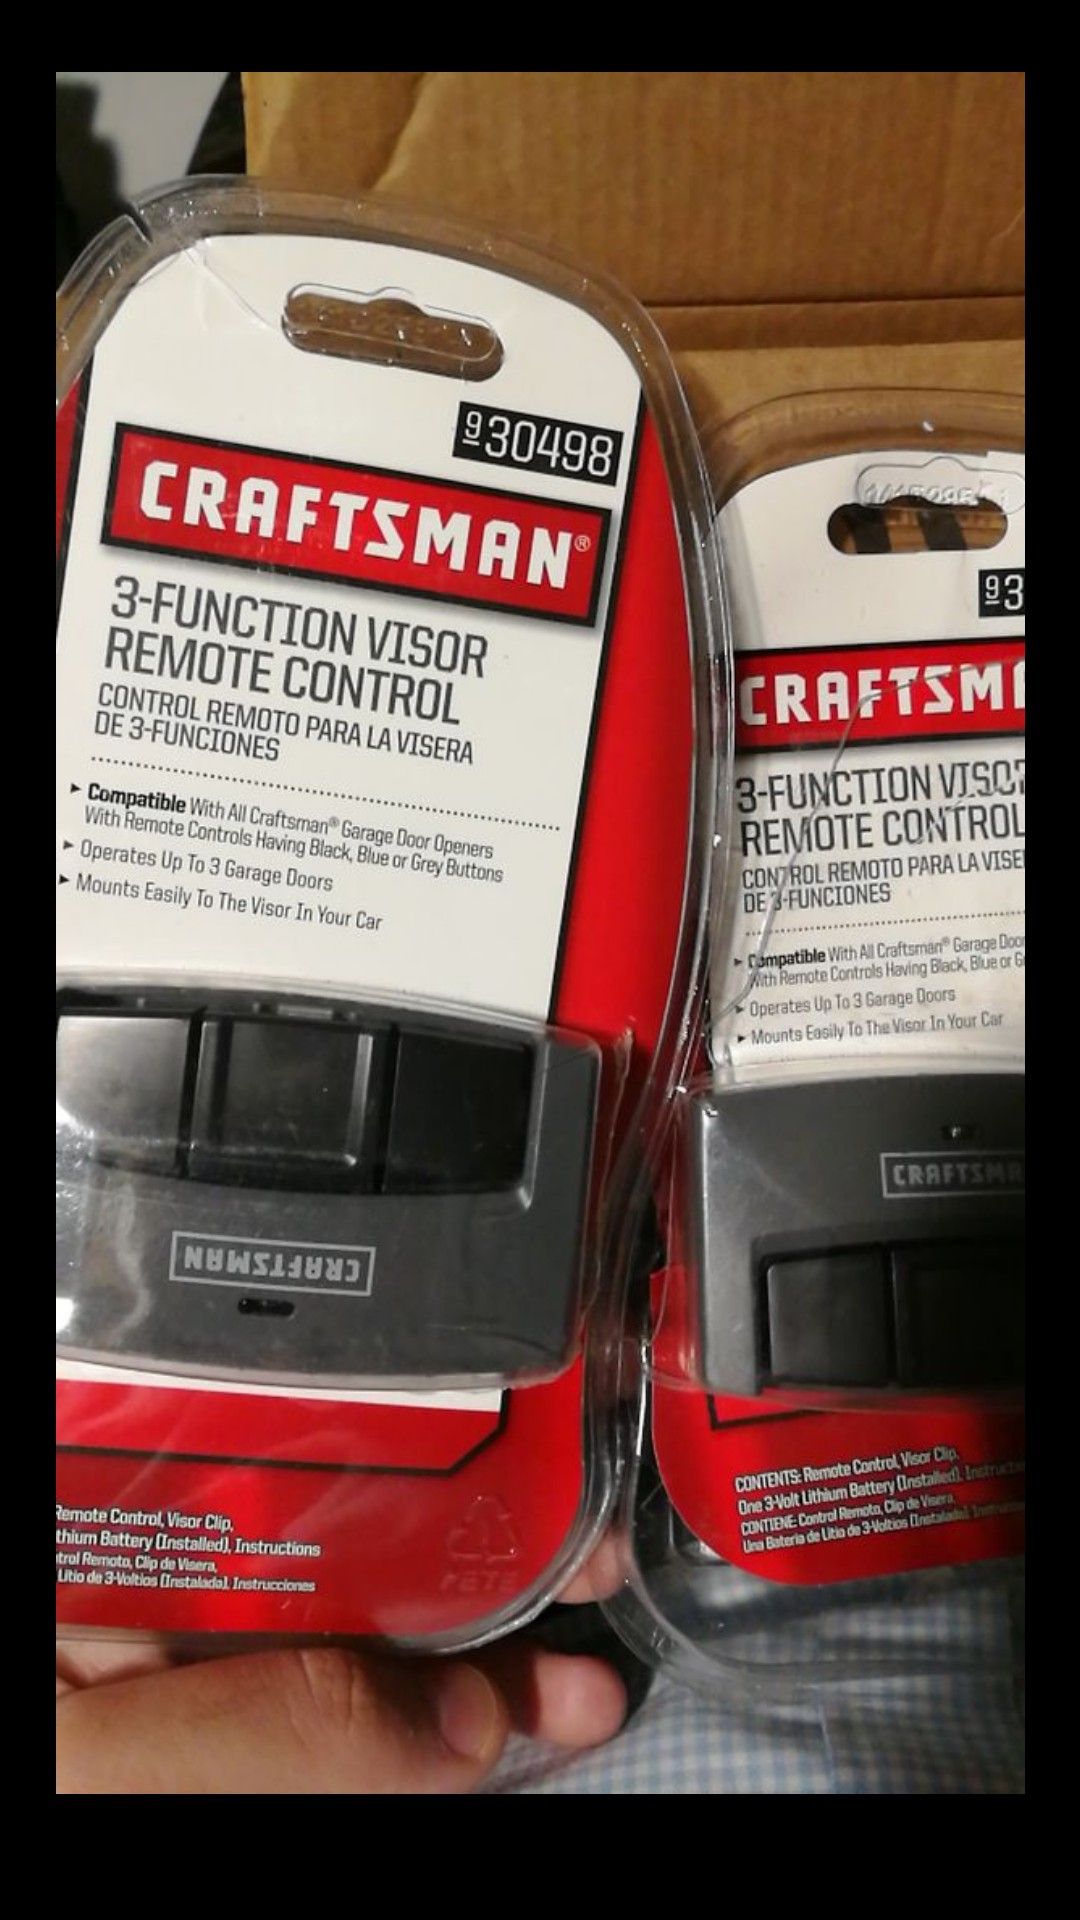 Craftsman door opener remote control